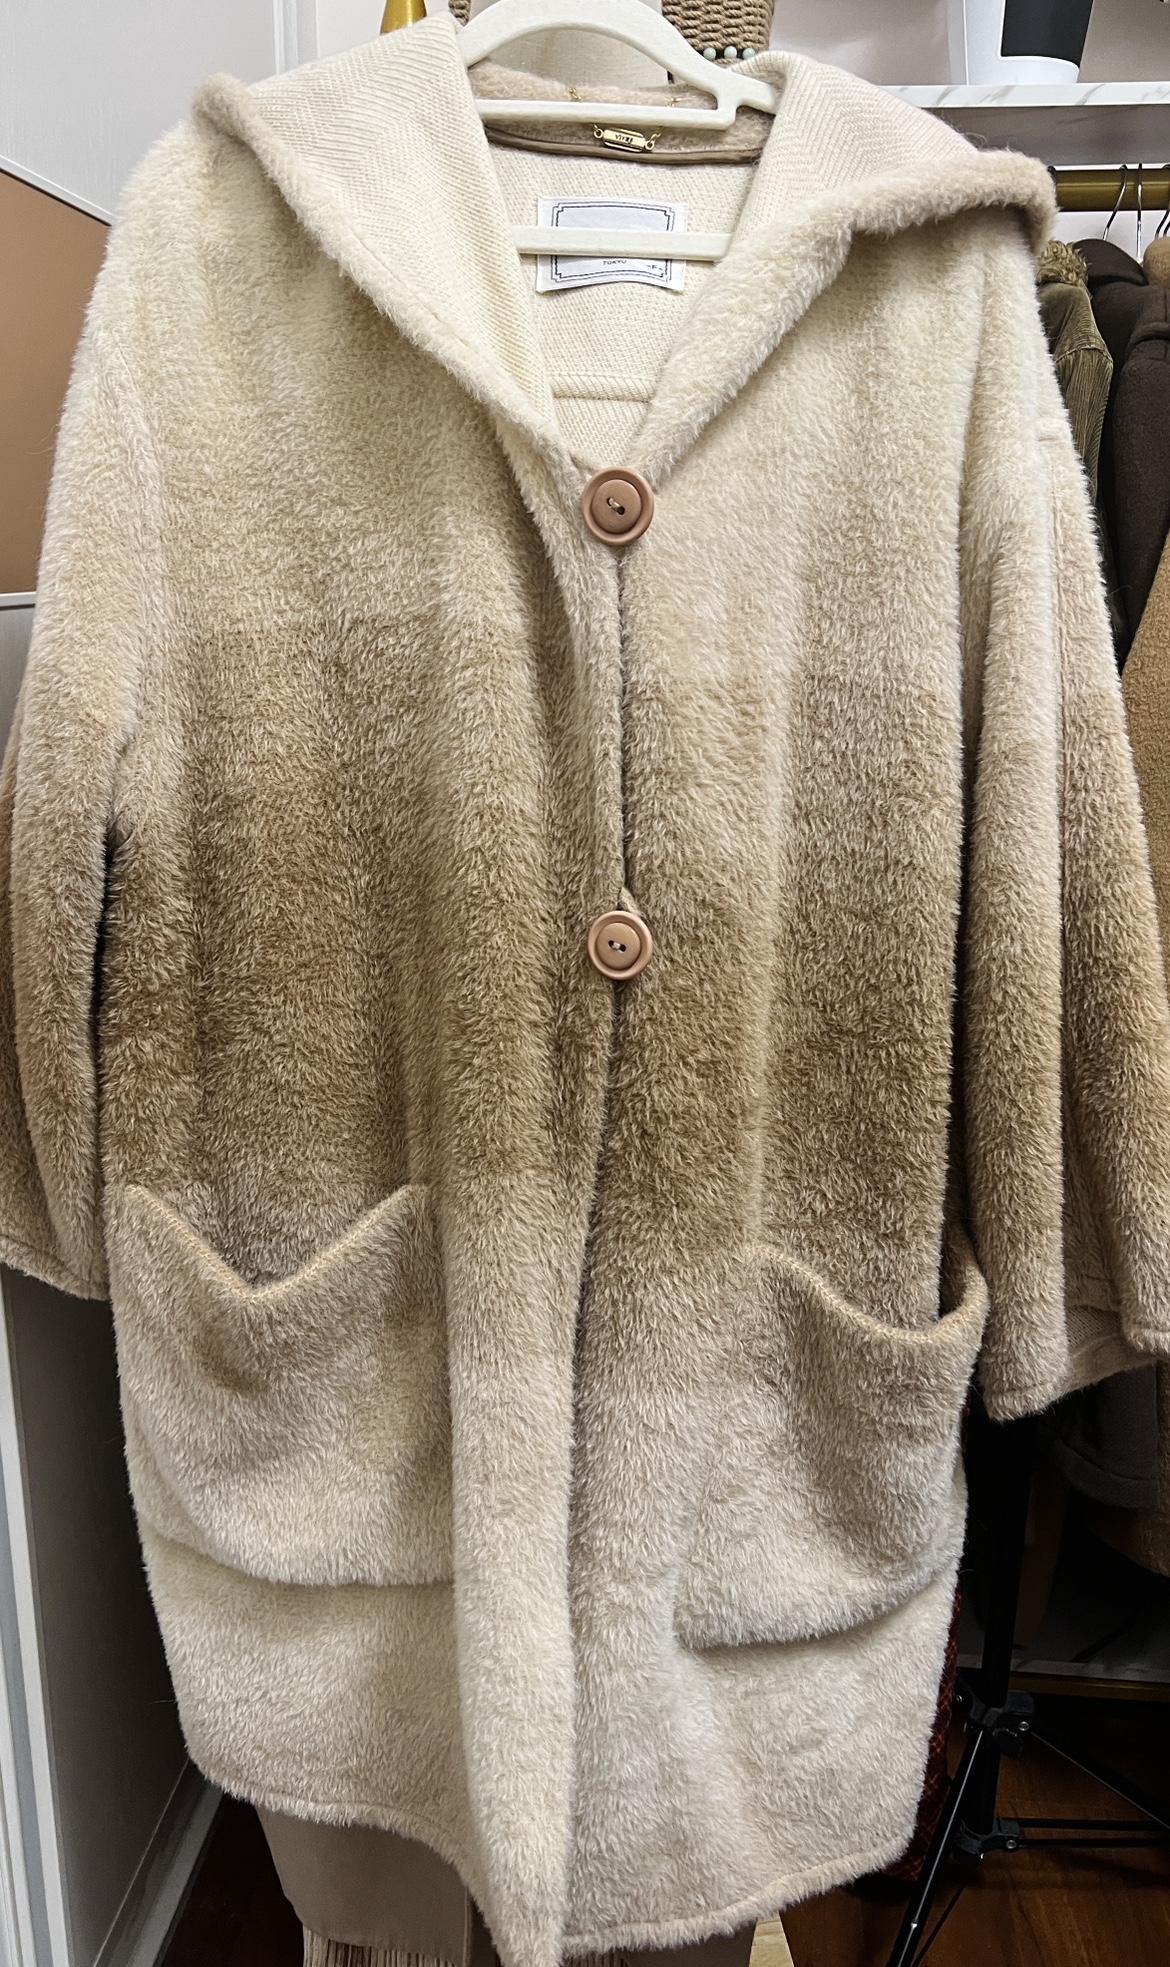 古着中古vintage100%羊毛斗篷连帽外套胸围124衣长95这样渐变色